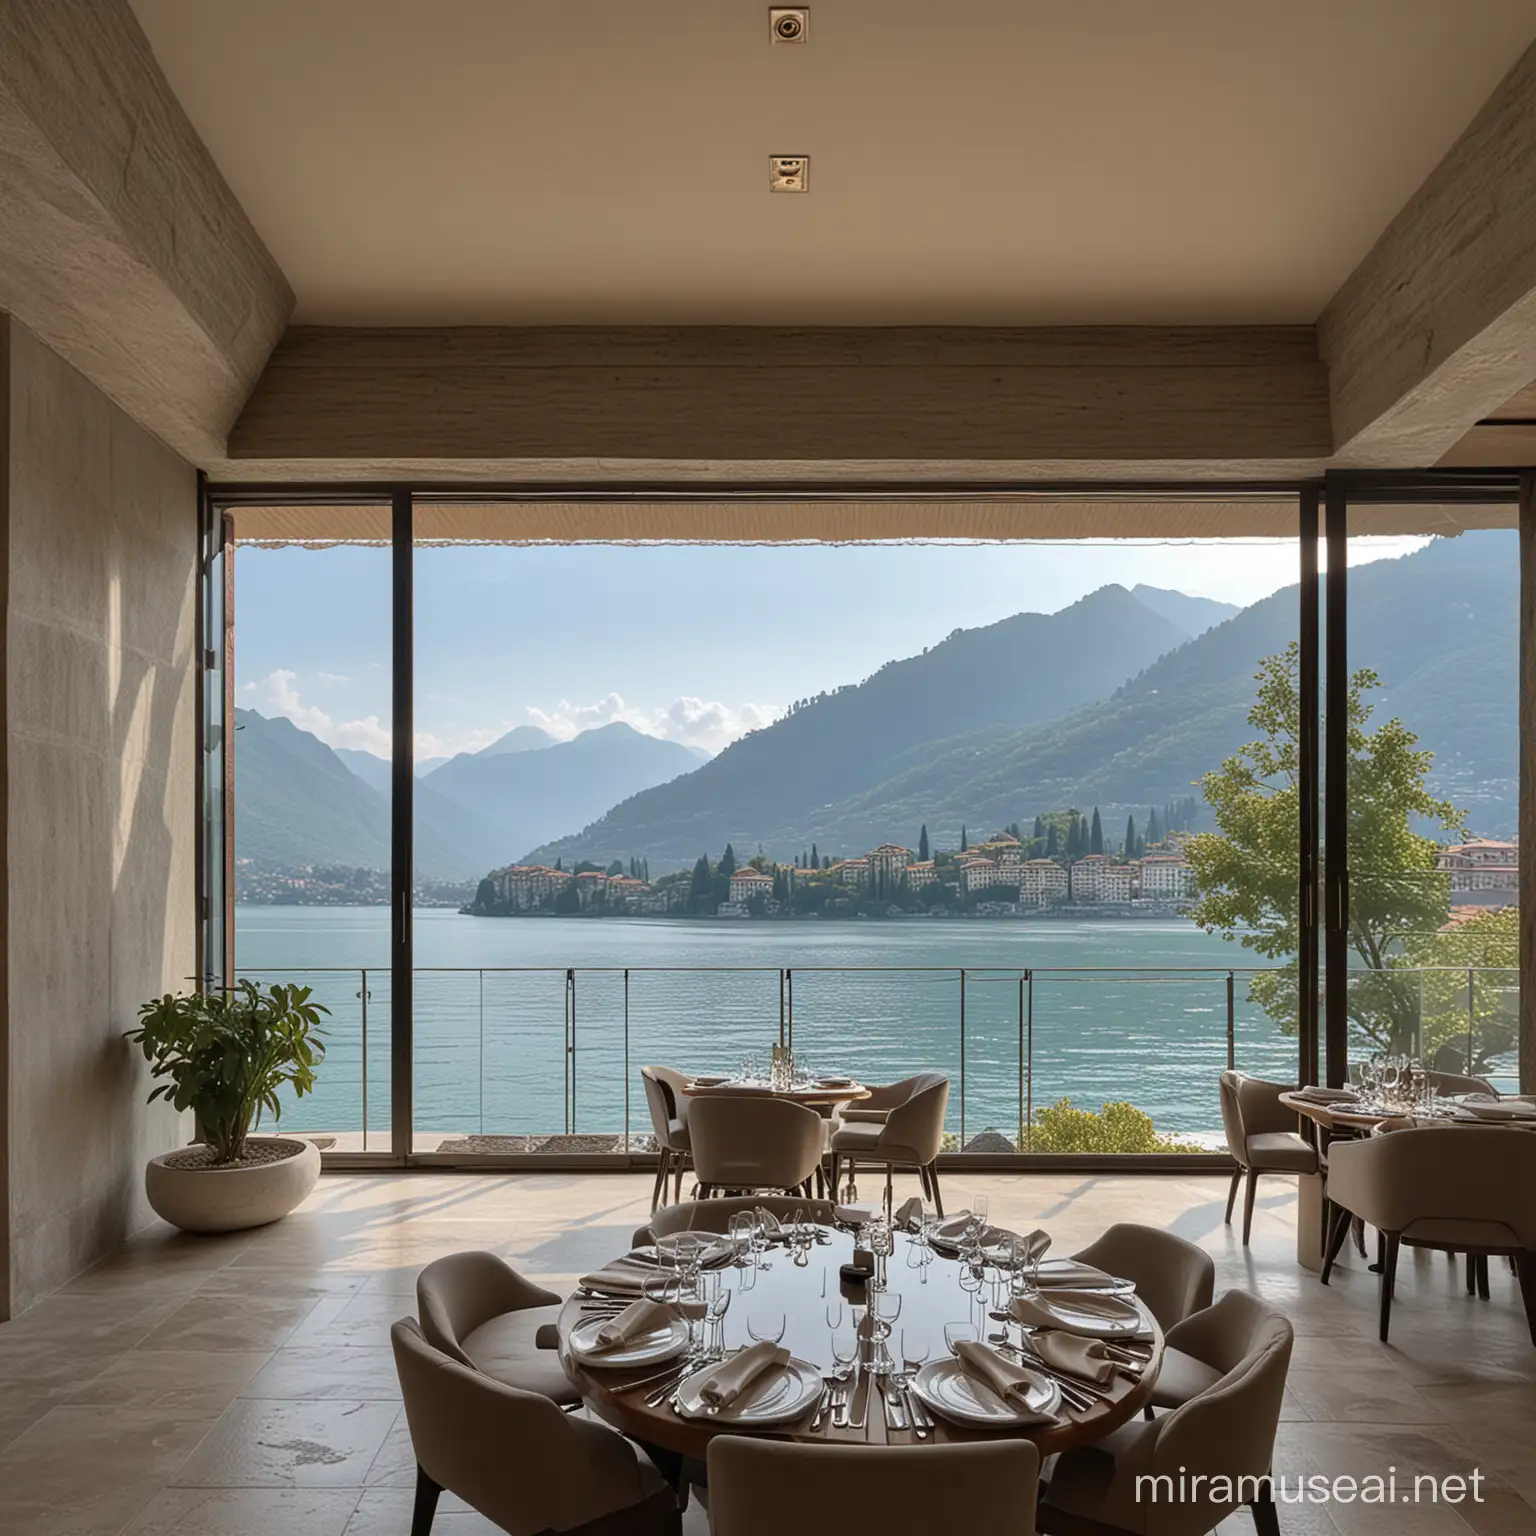 Tranquil Zen Luxury Restaurant Overlooking Lake Como with Indoor Fountain